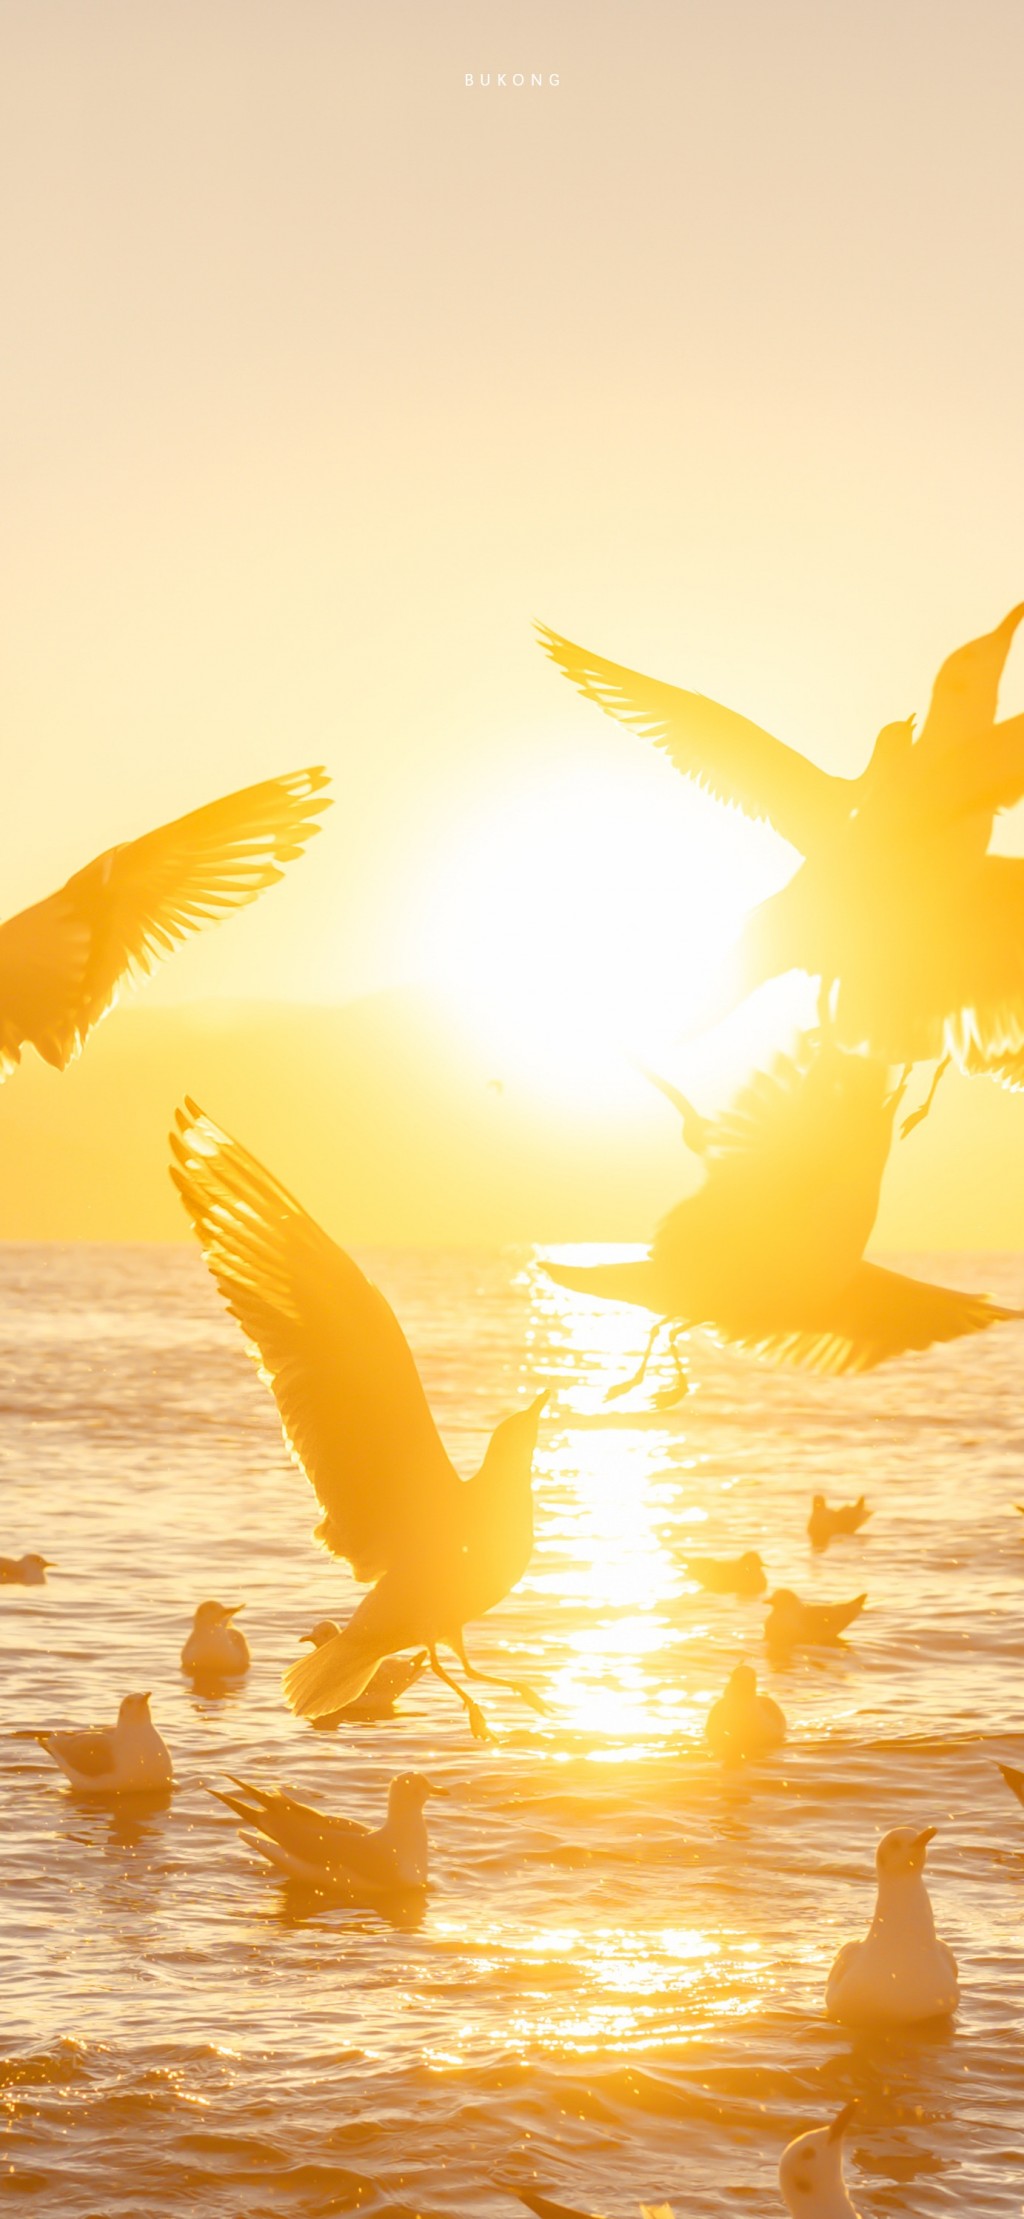 海鸥自由飞翔金色早安风景手机壁纸